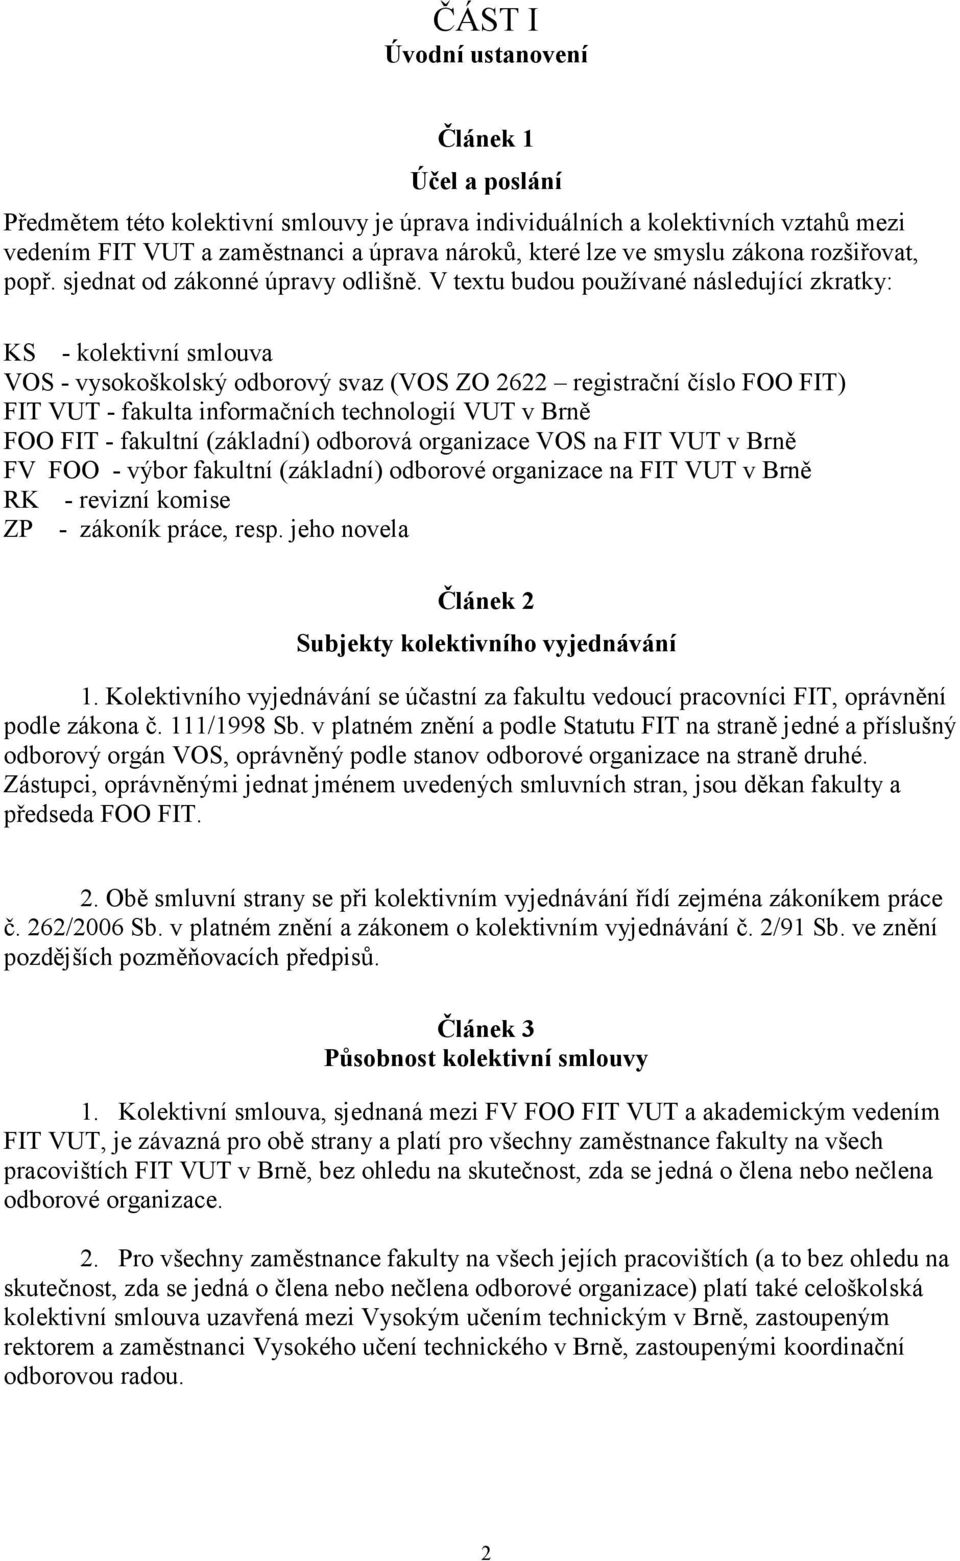 V textu budou používané následující zkratky: KS - kolektivní smlouva VOS - vysokoškolský odborový svaz (VOS ZO 2622 registrační číslo FOO FIT) FIT VUT - fakulta informačních technologií VUT v Brně